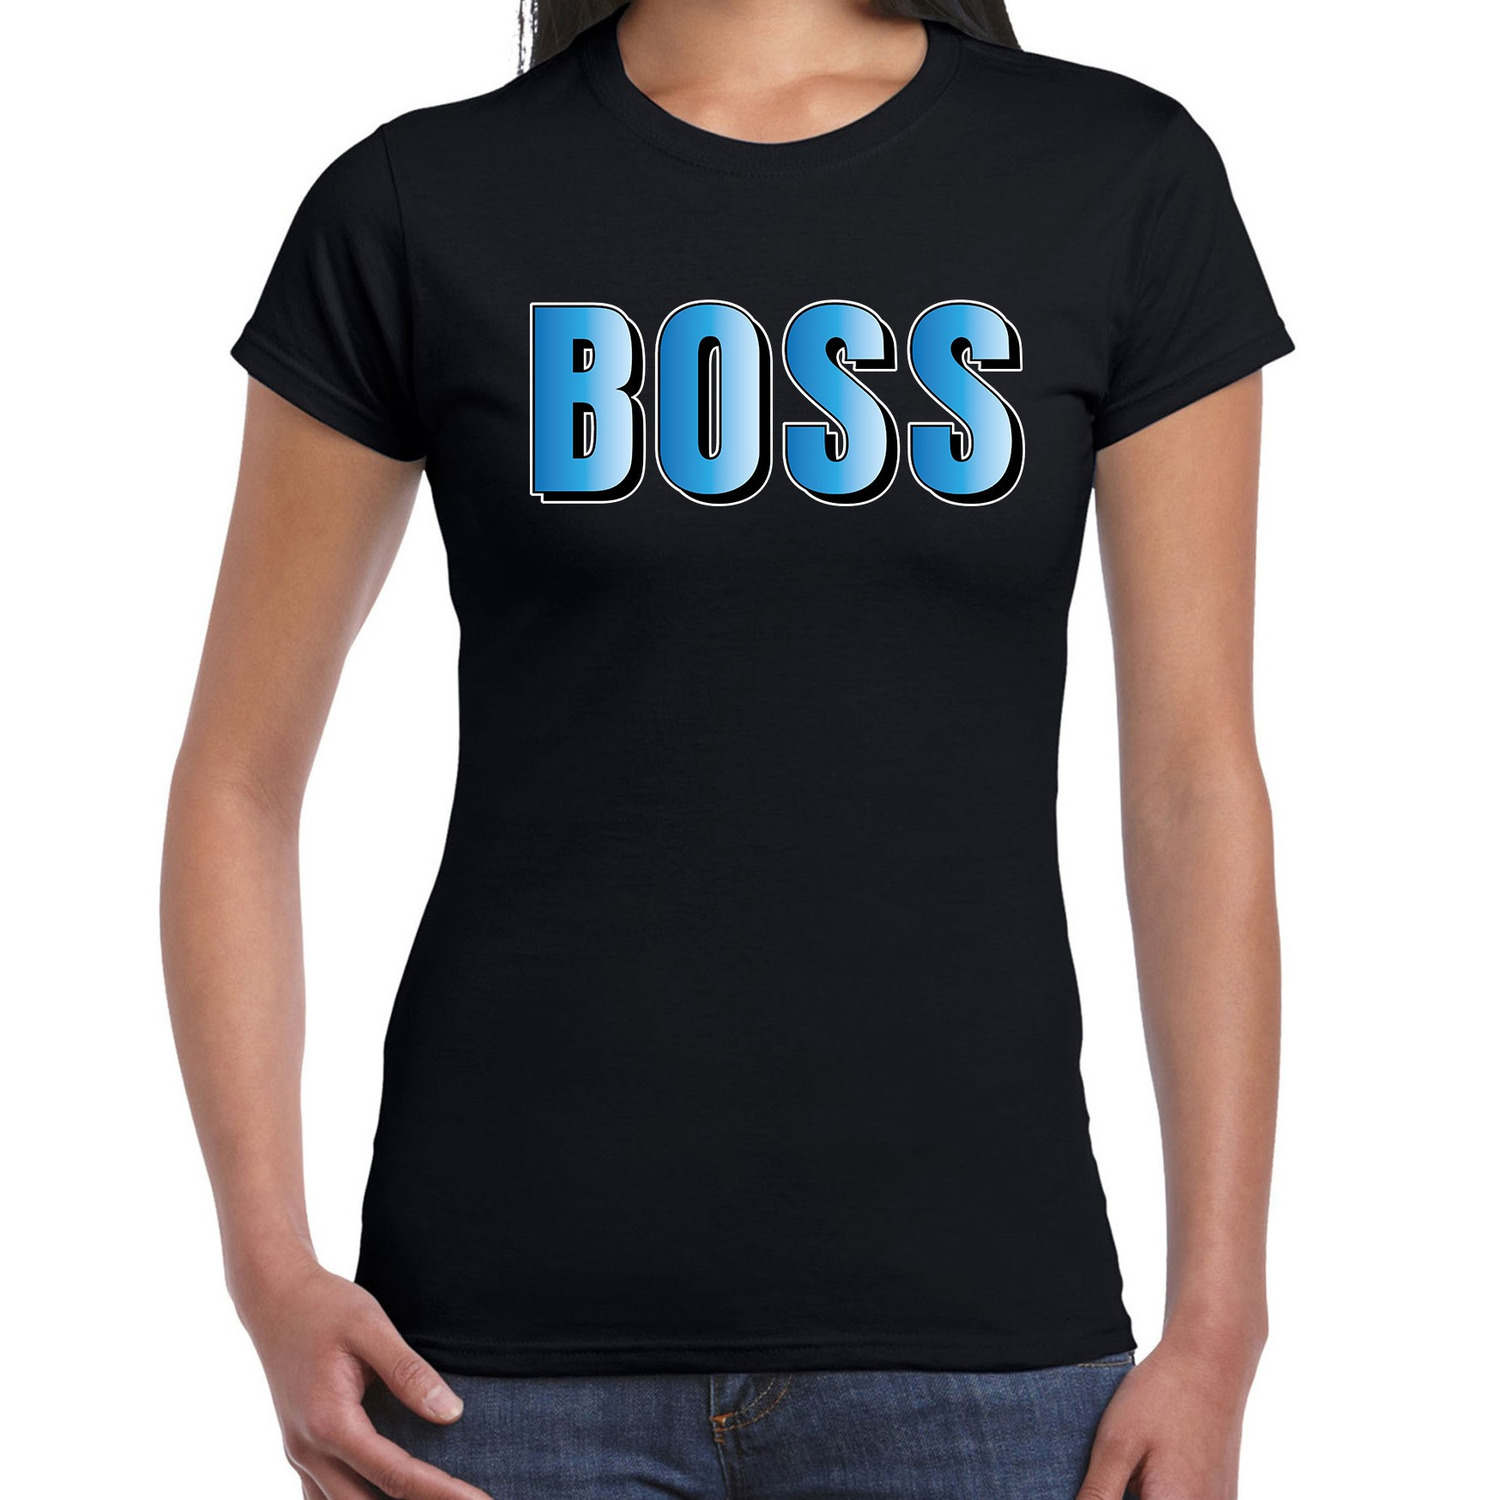 Boss t shirt zwart met blauwe letters voor dames